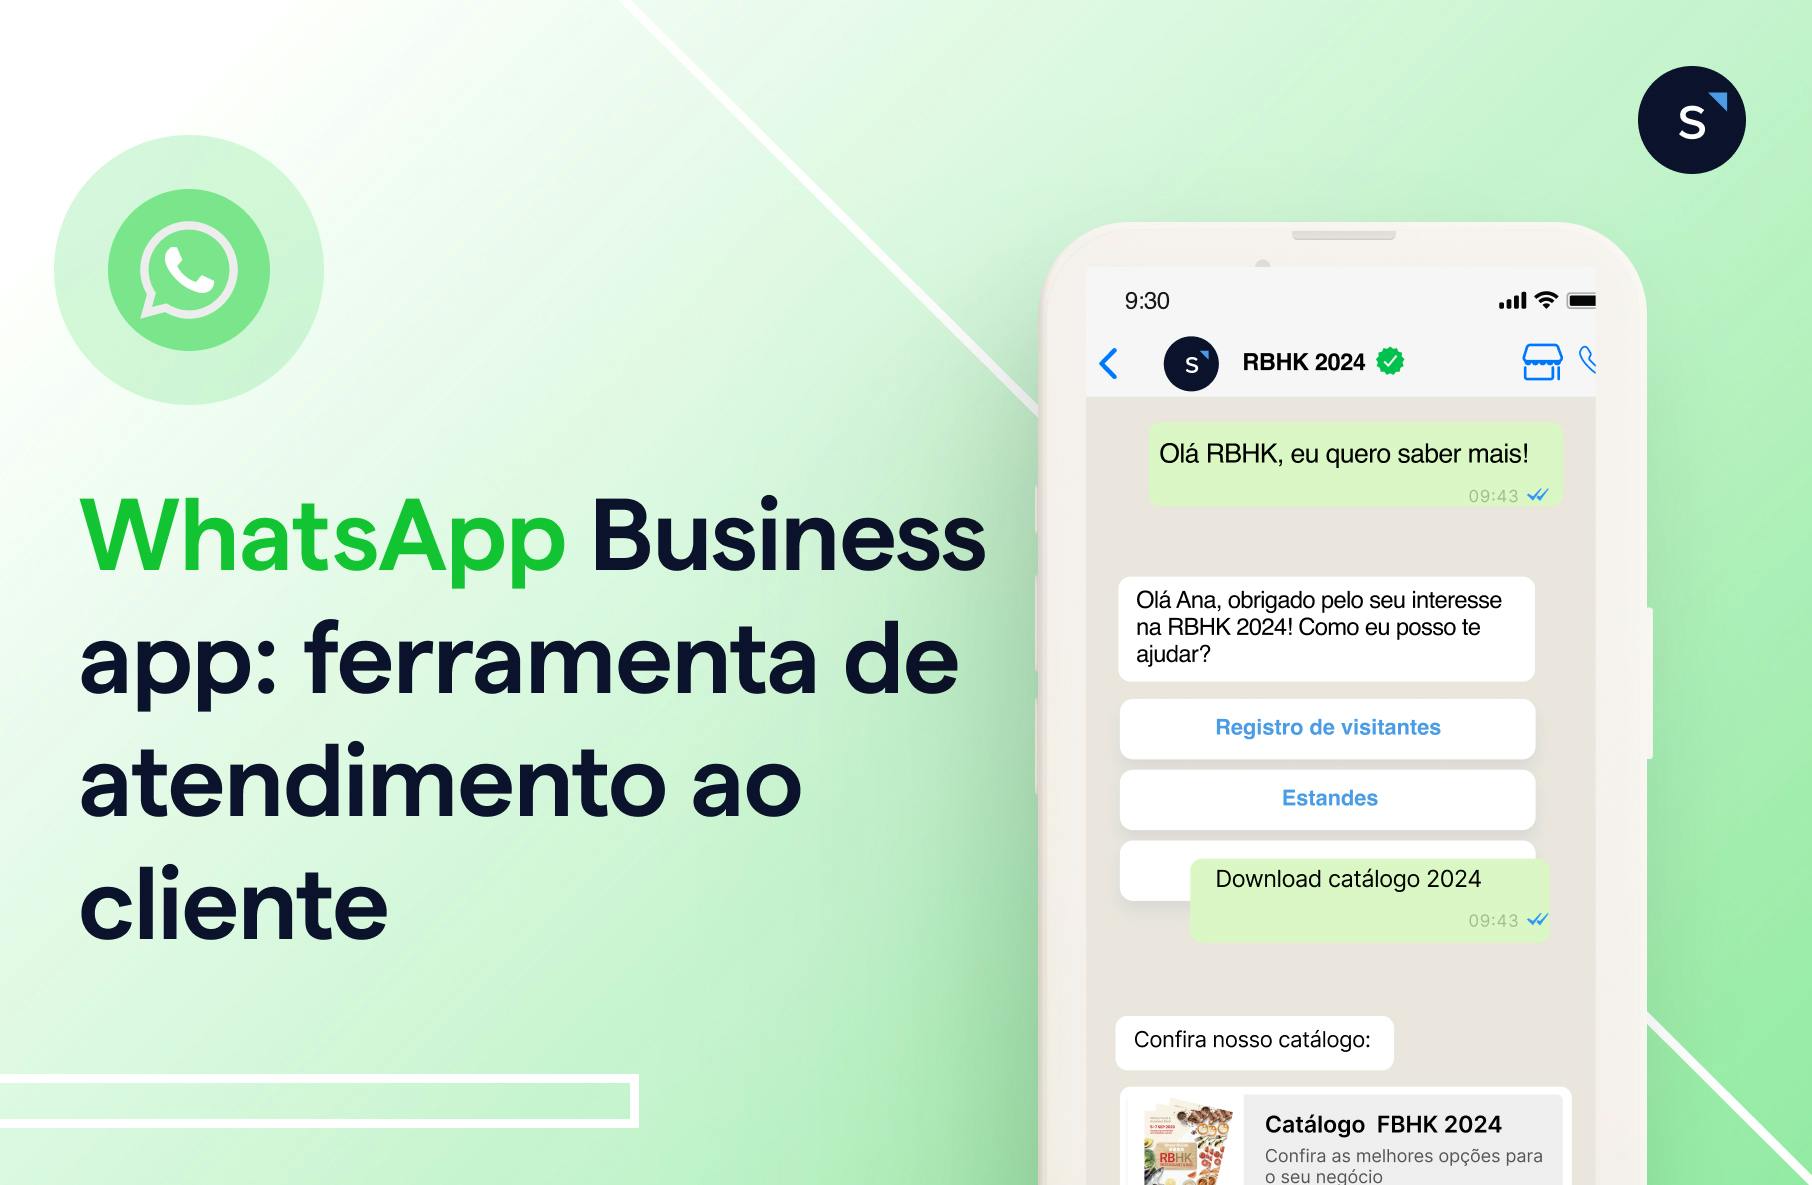 WhatsApp Business App: ferramenta de atendimento ao cliente